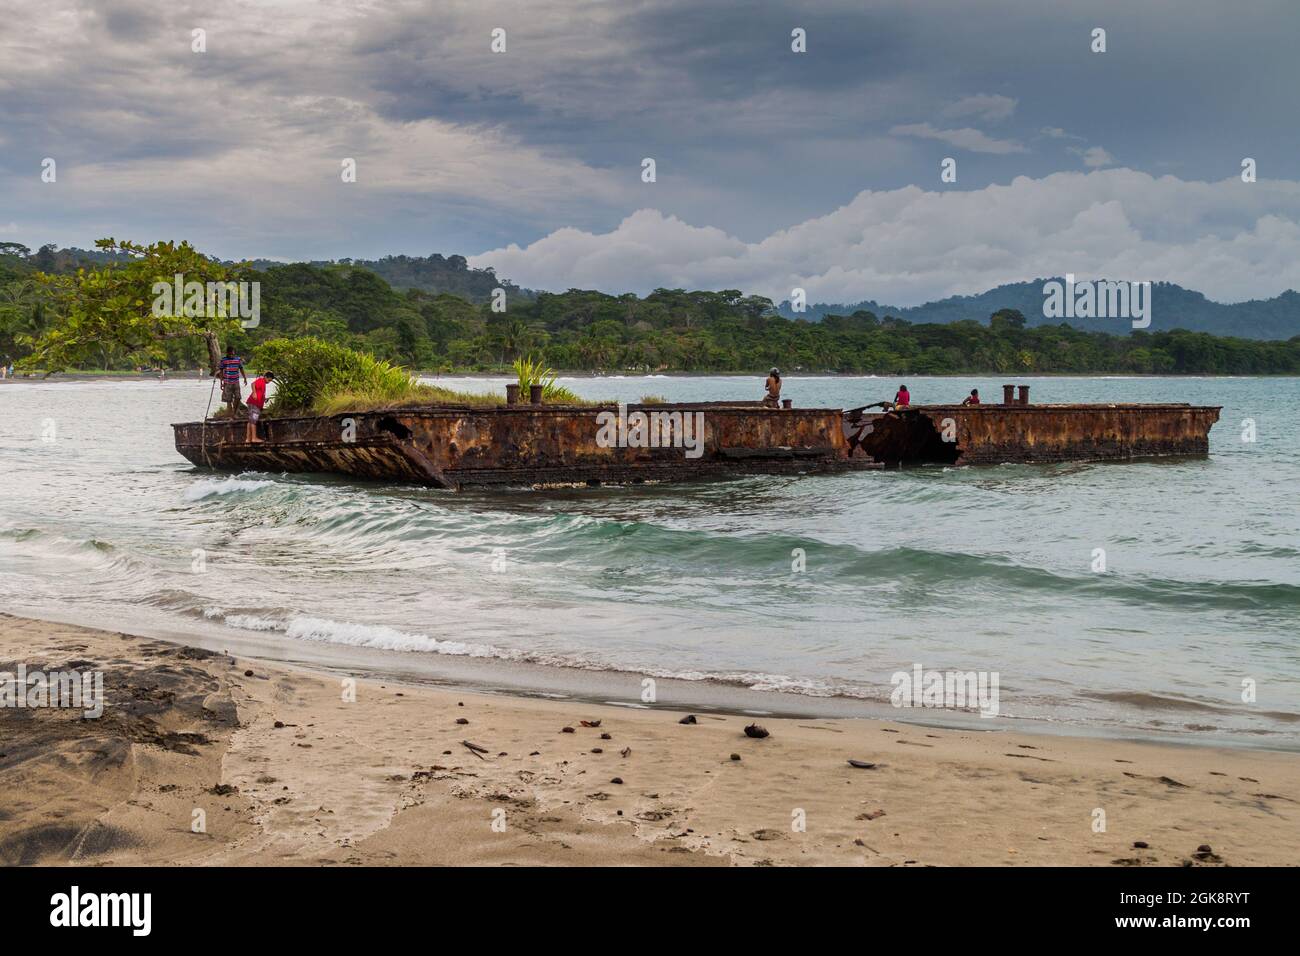 PUERTO VIEJO DE TALAMANCA, COSTA RICA - MAI 16 : personnes sur un ponton rouillé dans le village de Puerto Viejo de Talamanca, Costa Rica Banque D'Images